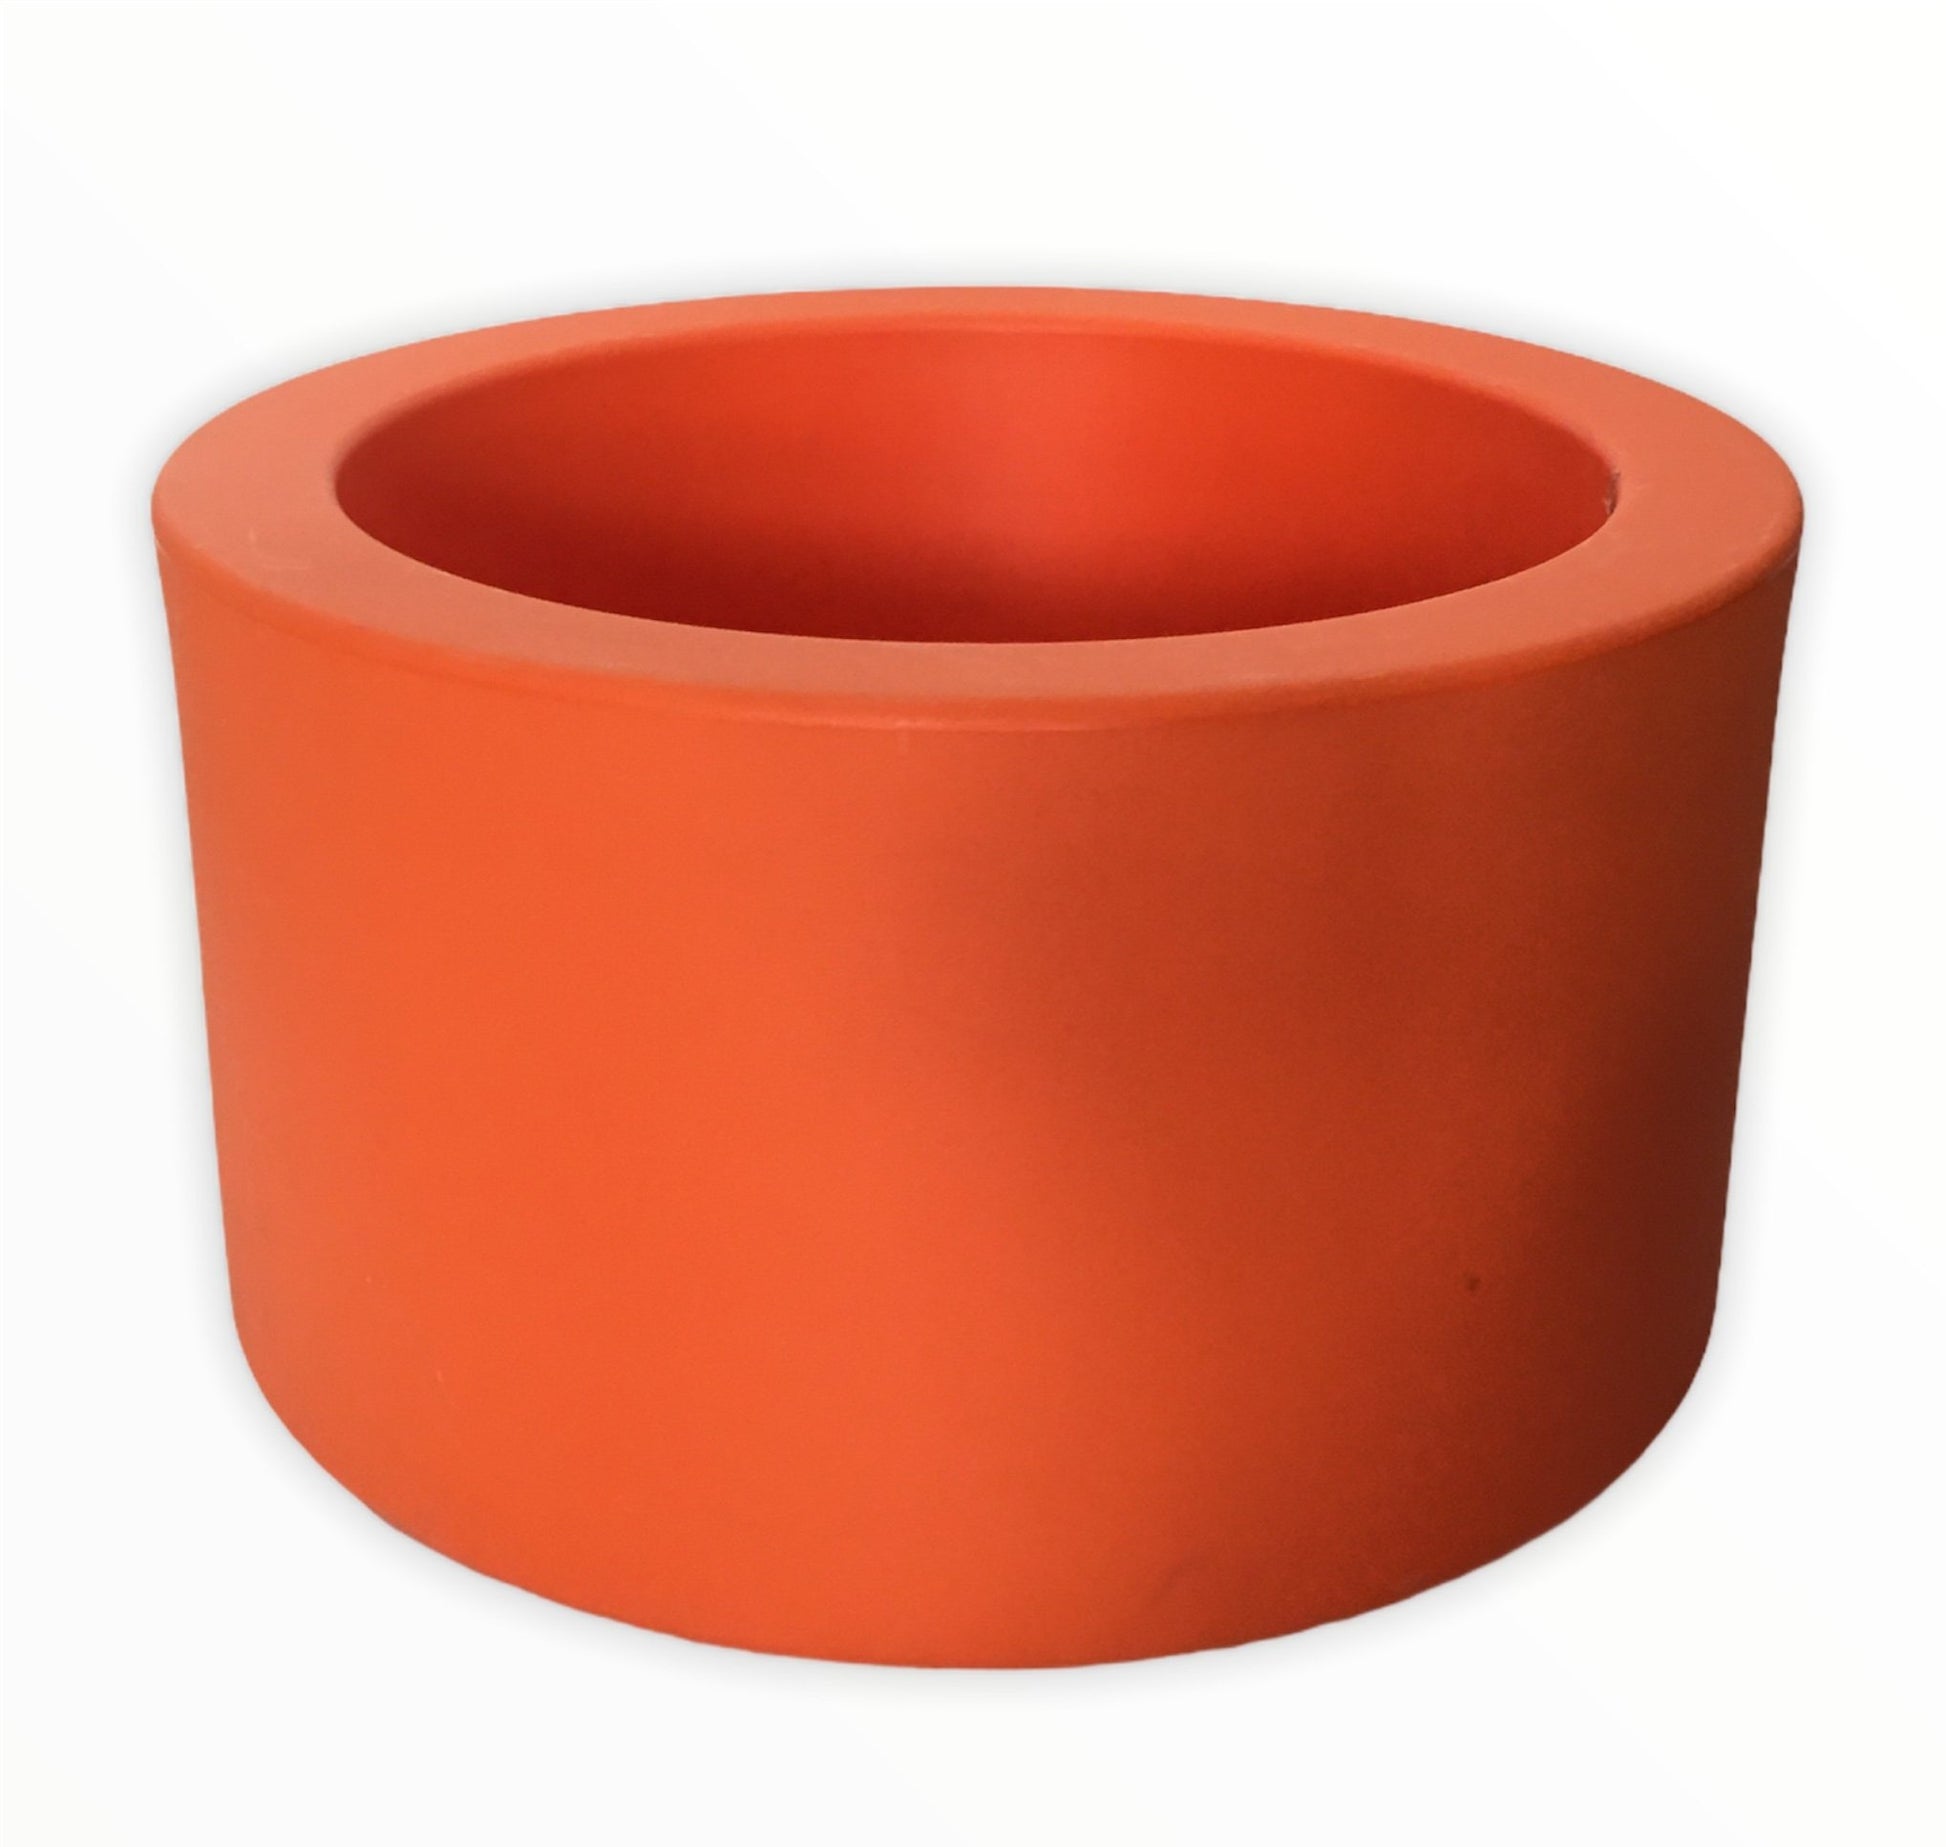 Fioriera in polietilene stampato tonda di colore arancio, con riserva d'acqua. Dimensioni: diametro esterno cm 45,5 x 28 h, diametro interno cm 35,5 x 22,5 h